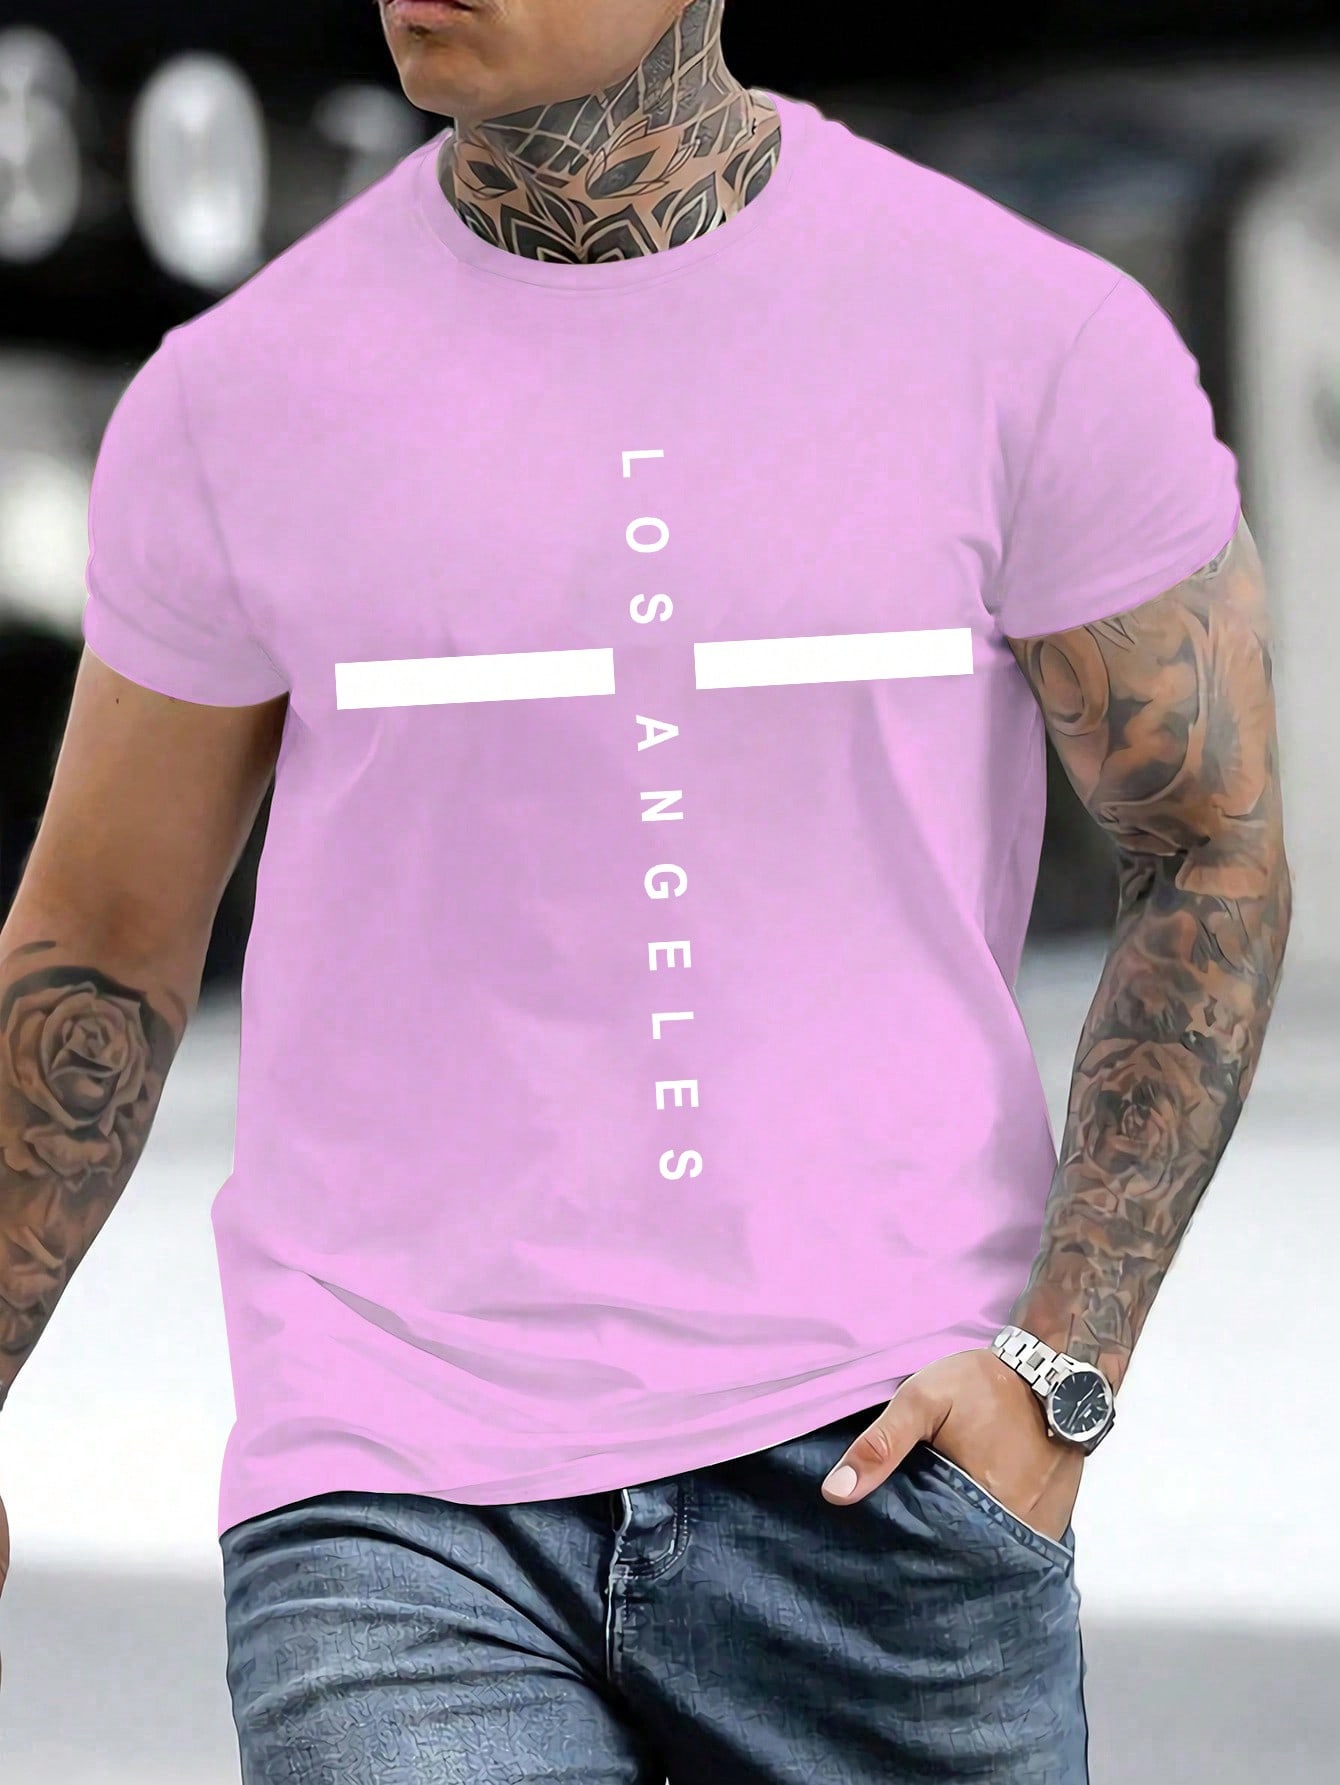 Мужская футболка с круглым вырезом и буквенным принтом Manfinity Homme, сиреневый фиолетовый футболка женская с буквенным принтом модный винтажный топ в эстетике повседневная рубашка с круглым вырезом с графическим принтом на лет